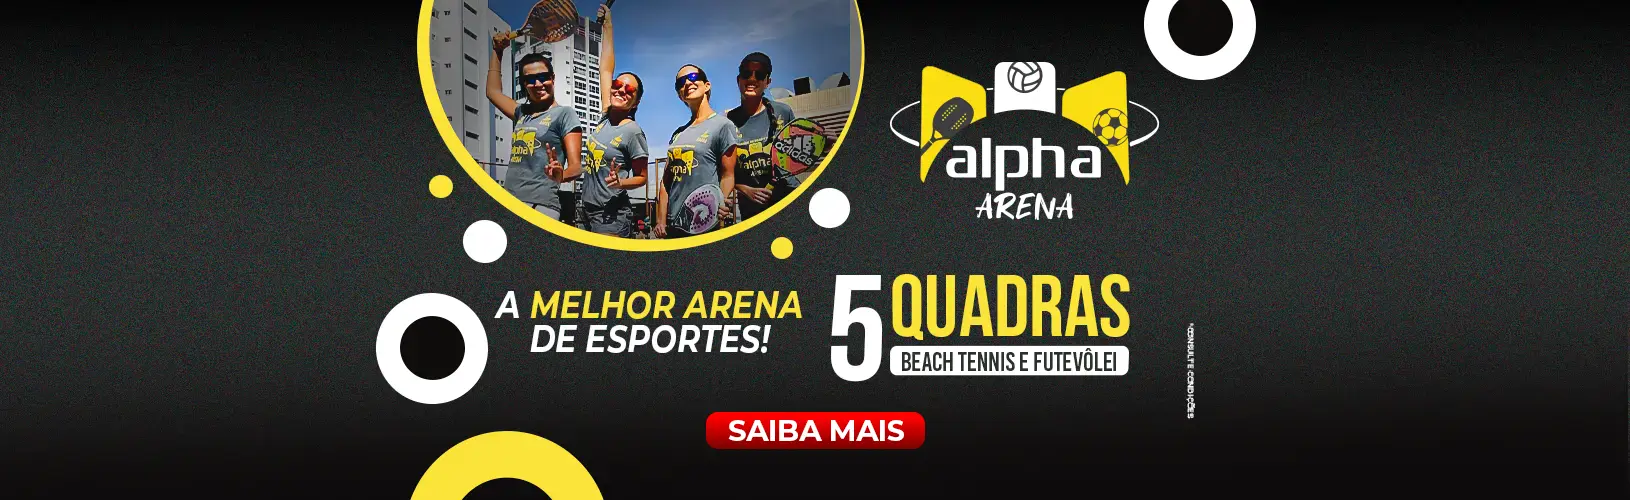 Campanha Alpha Arena